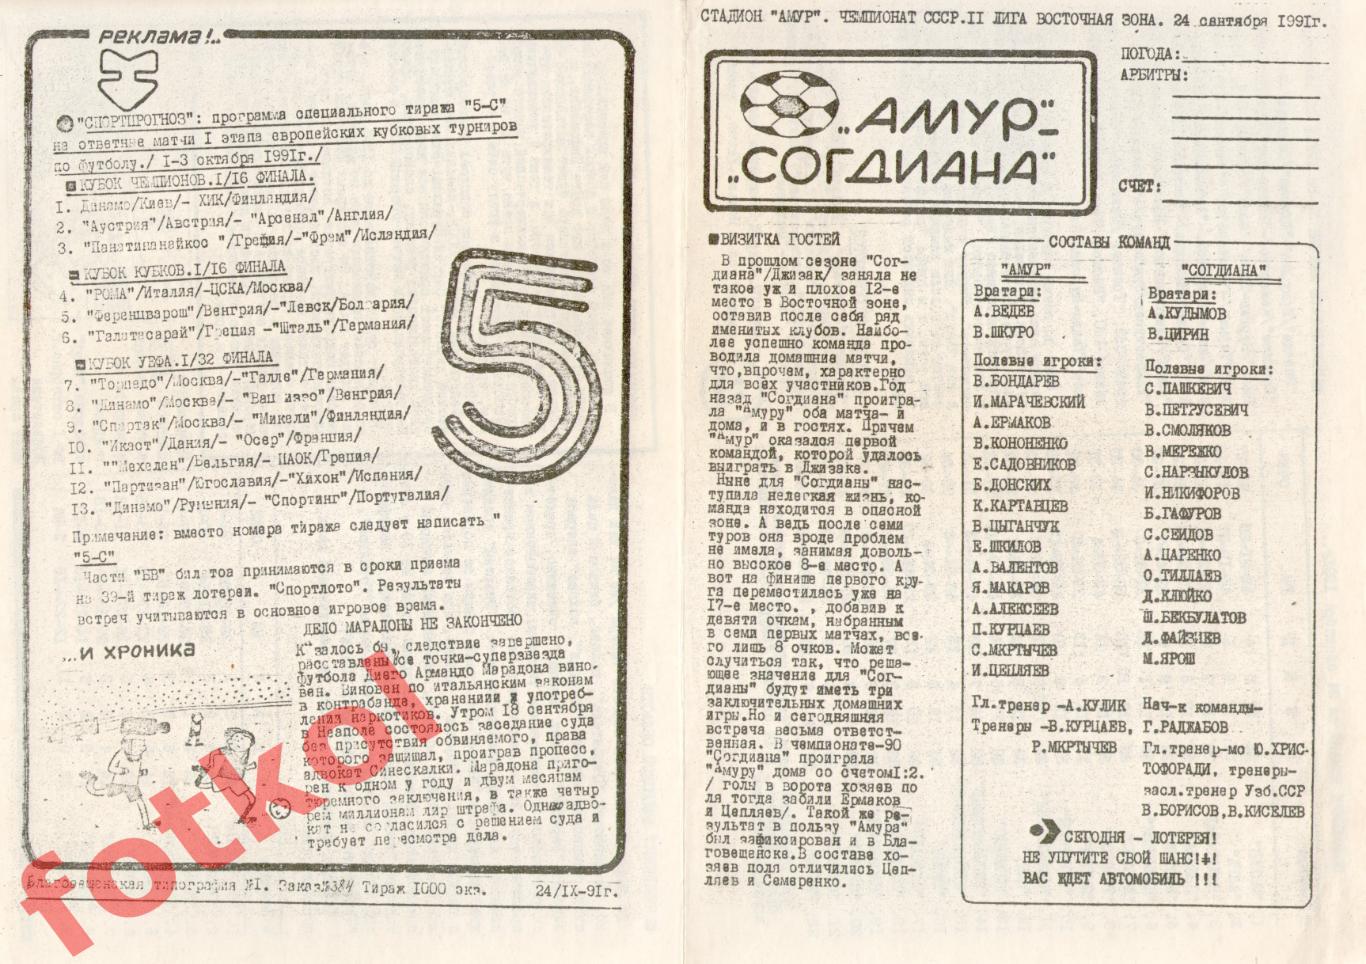 АМУР Благовещенск - СОГДИАНА Джизак 24.09.1991